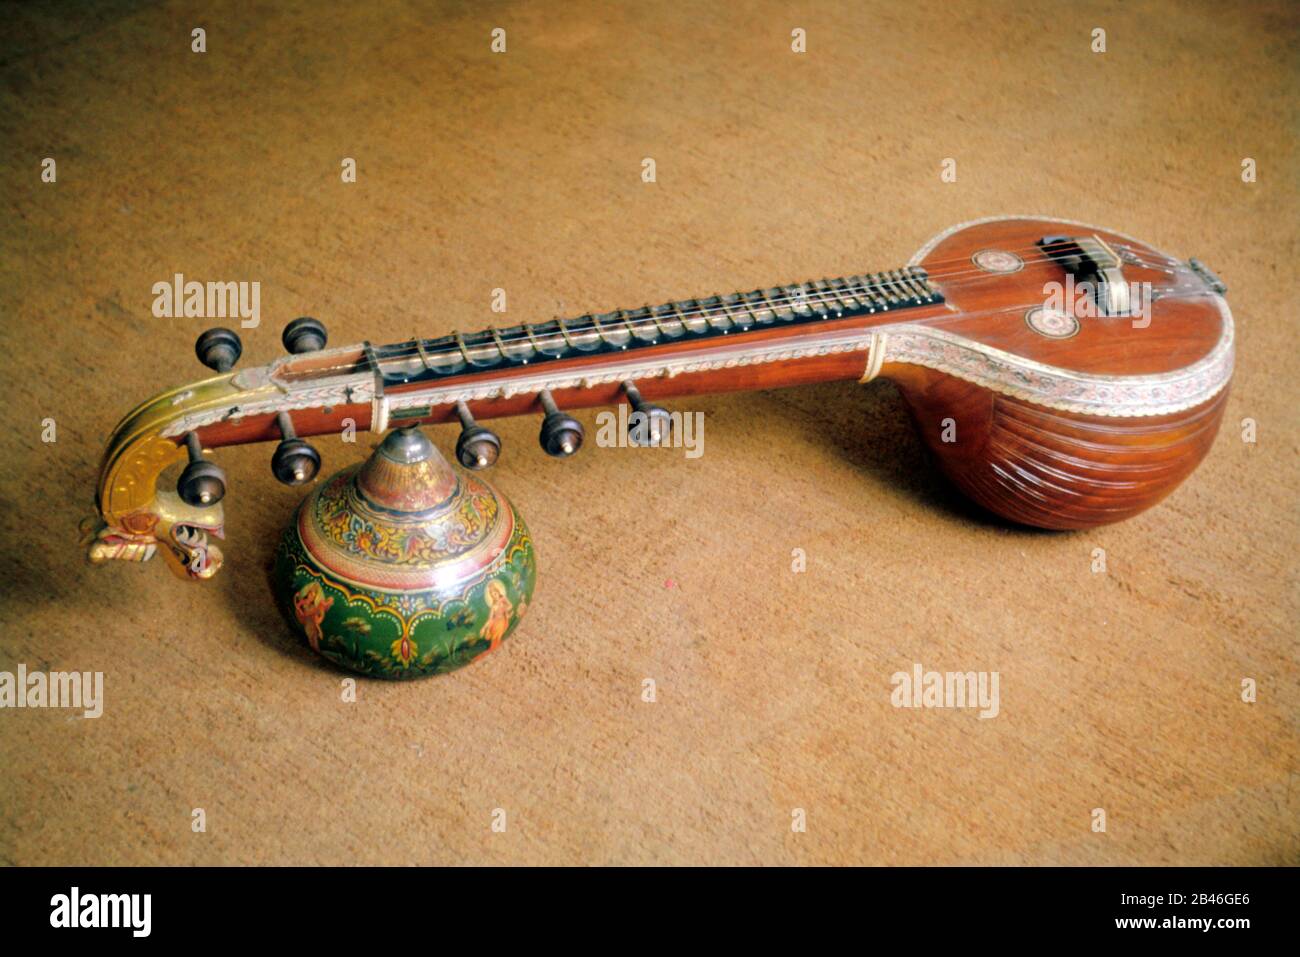 Veena indisches klassisches Musikinstrument Indien Asiatische Musikinstrumente Stockfoto